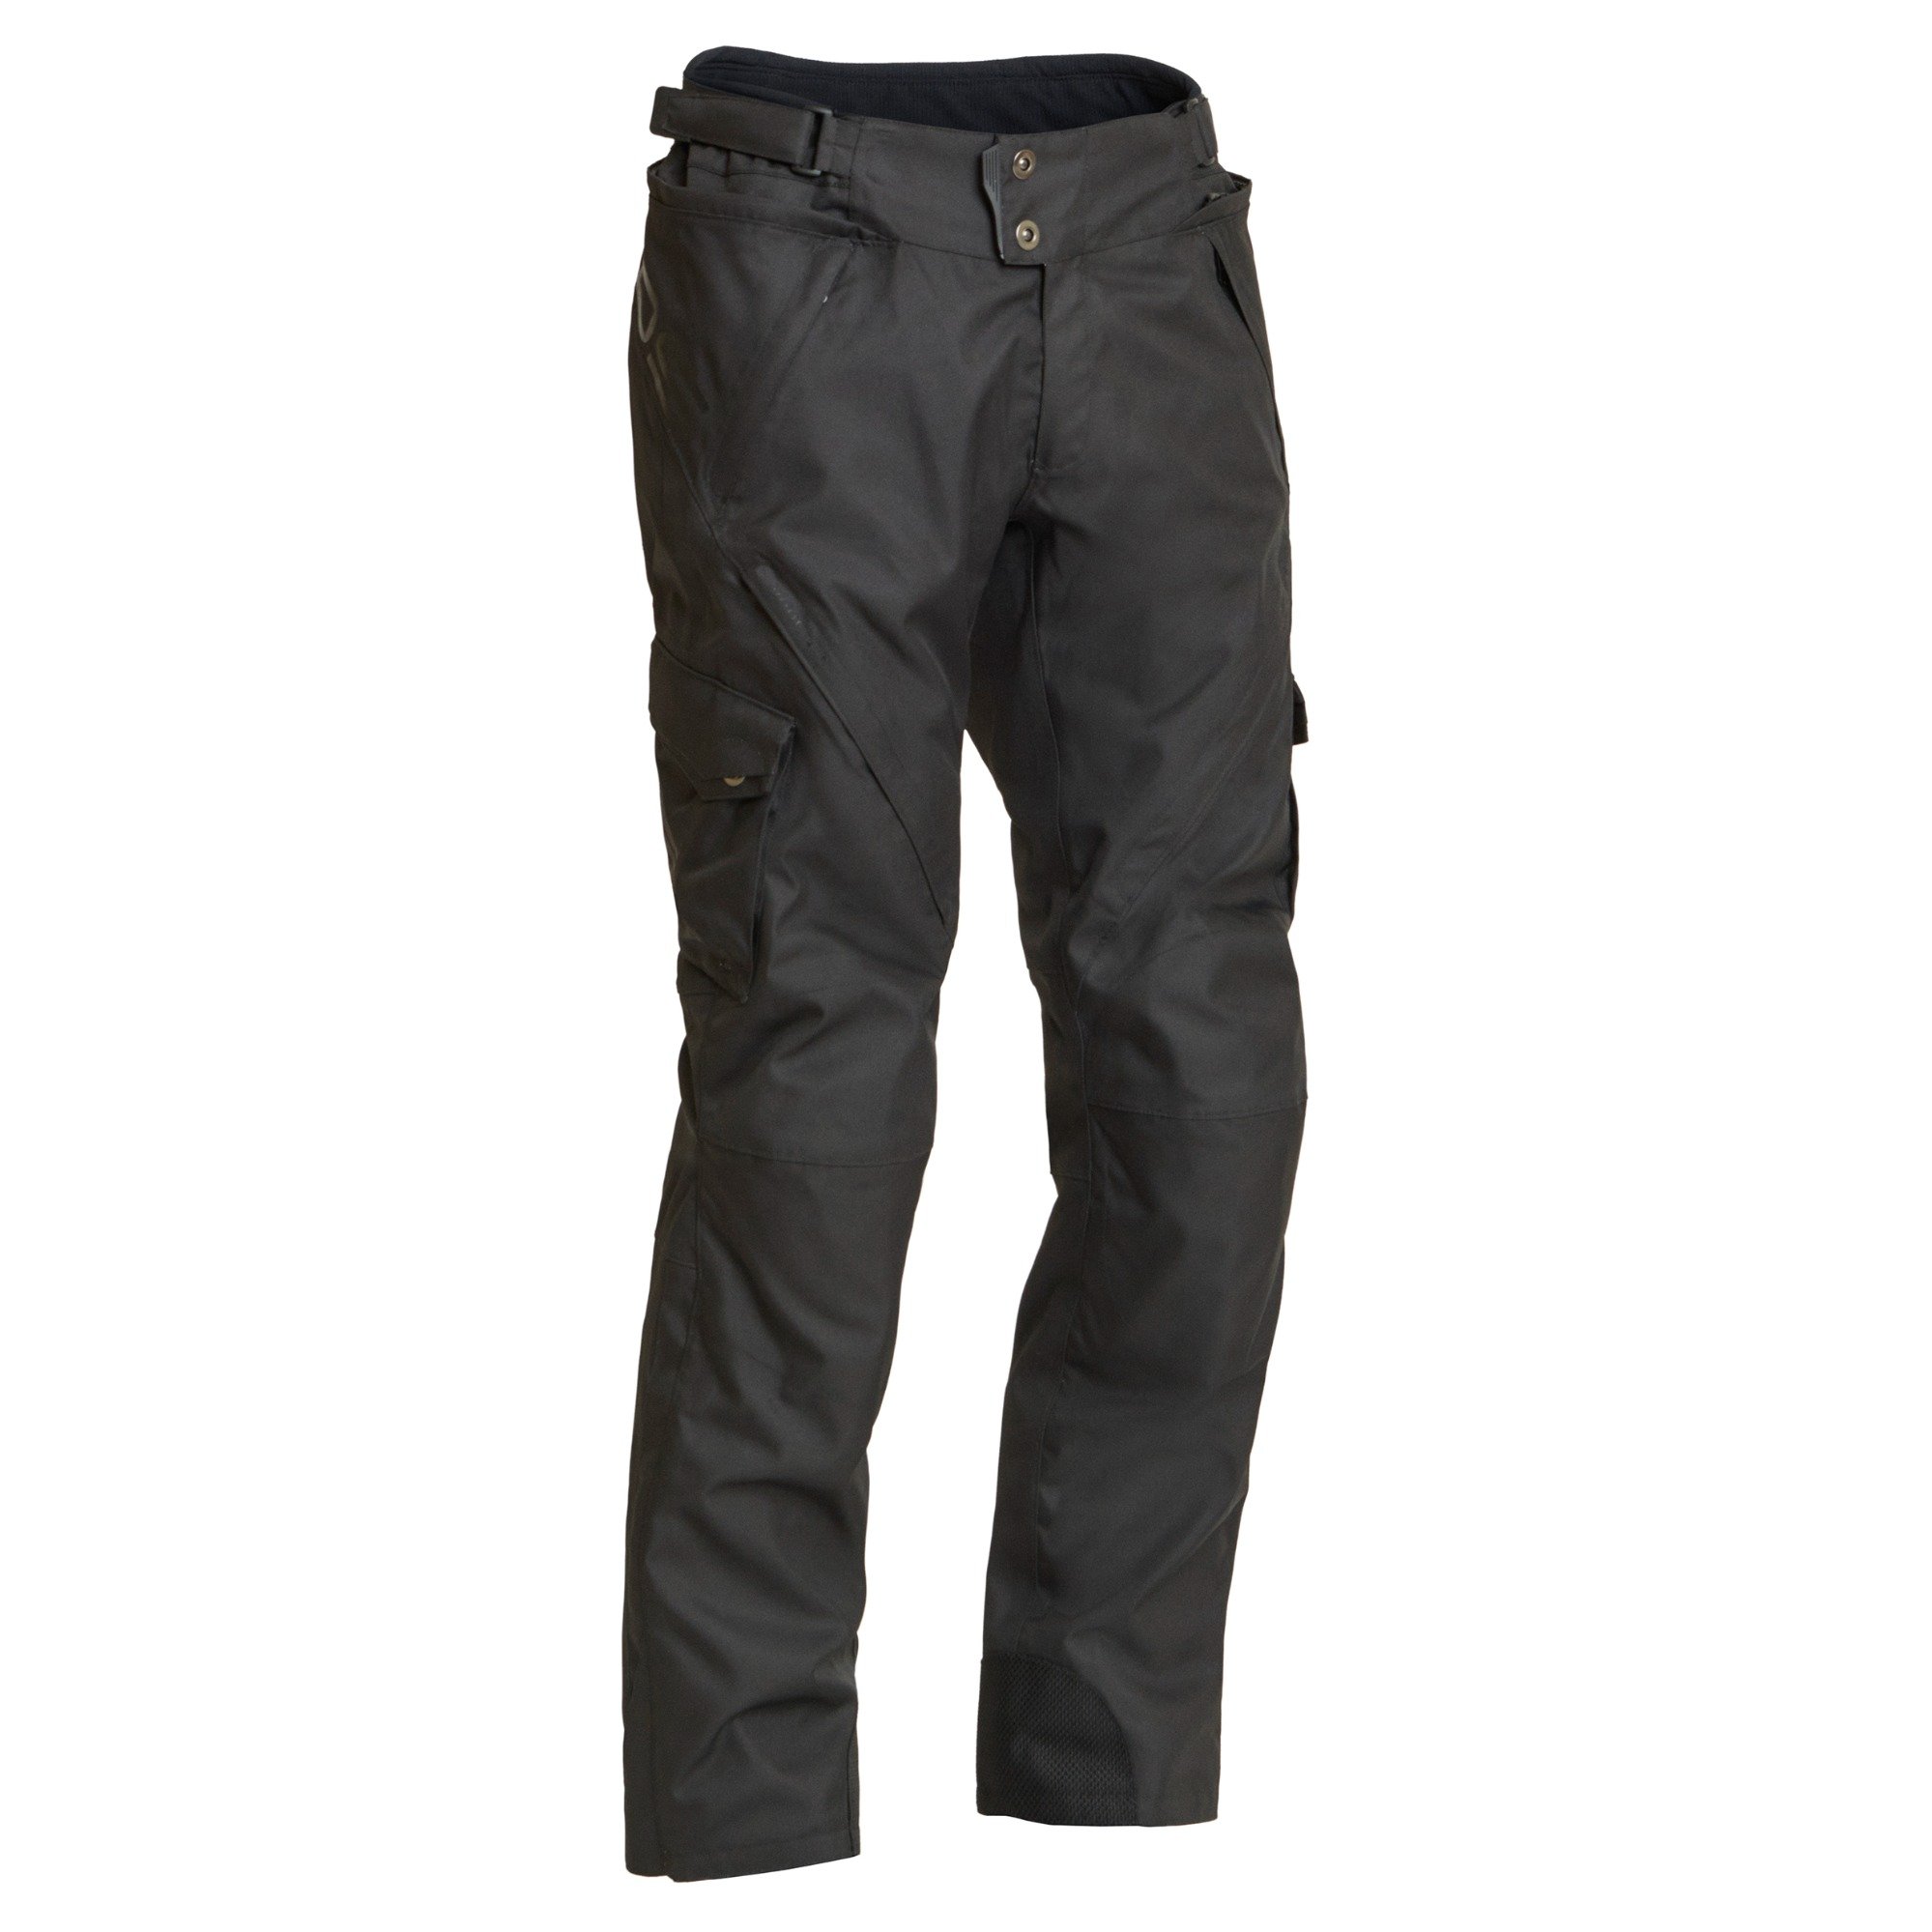 Image of Lindstrands Berga Black Textile Pants Size 56 ID 6438235188202